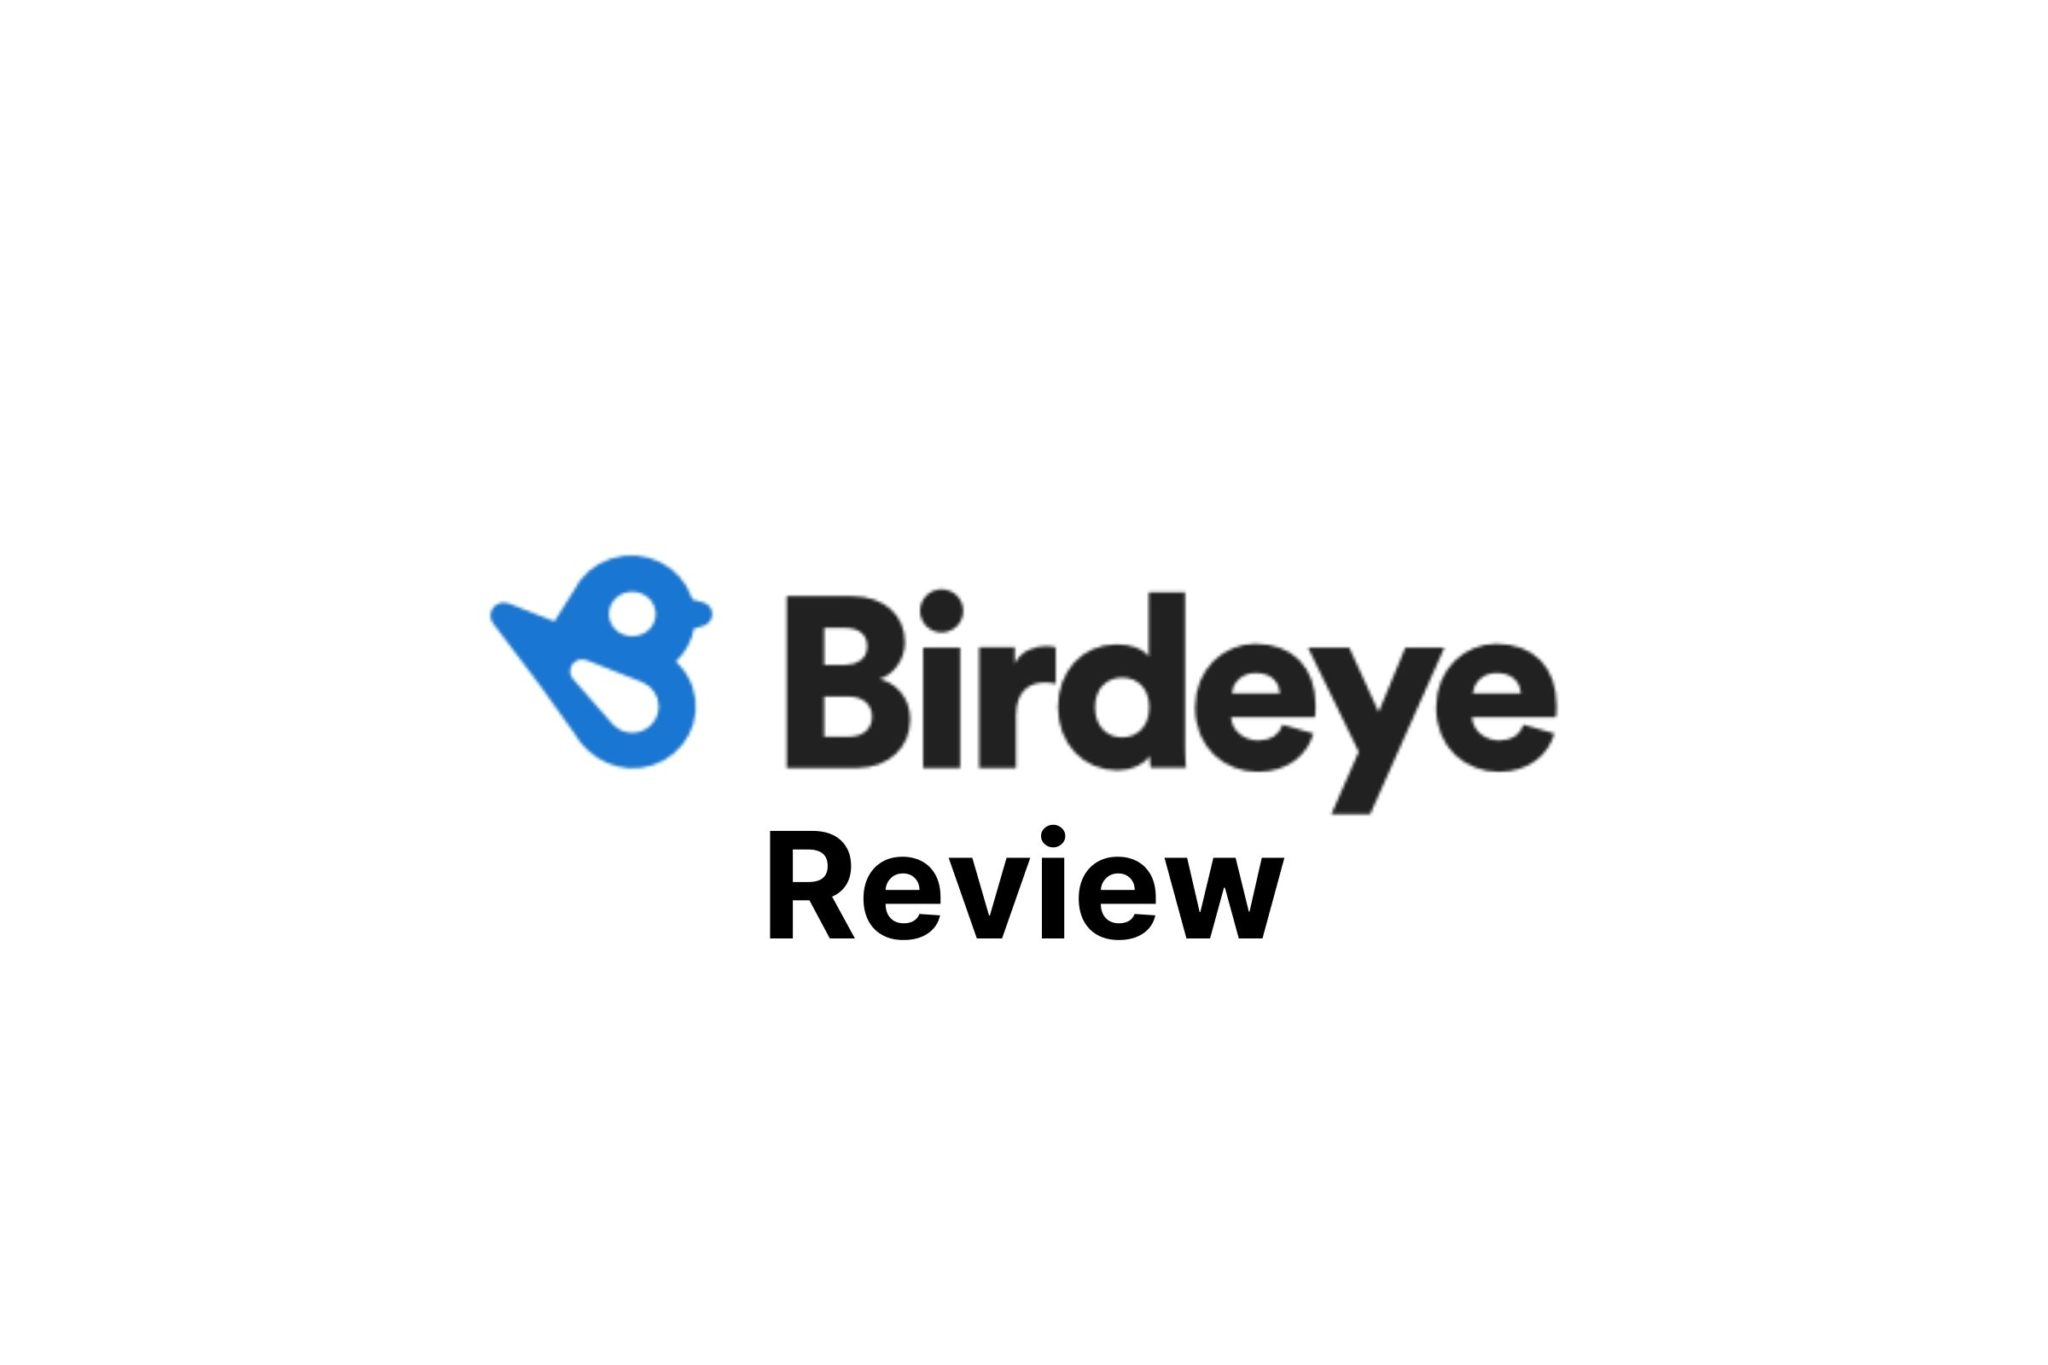 Review of Birdeye